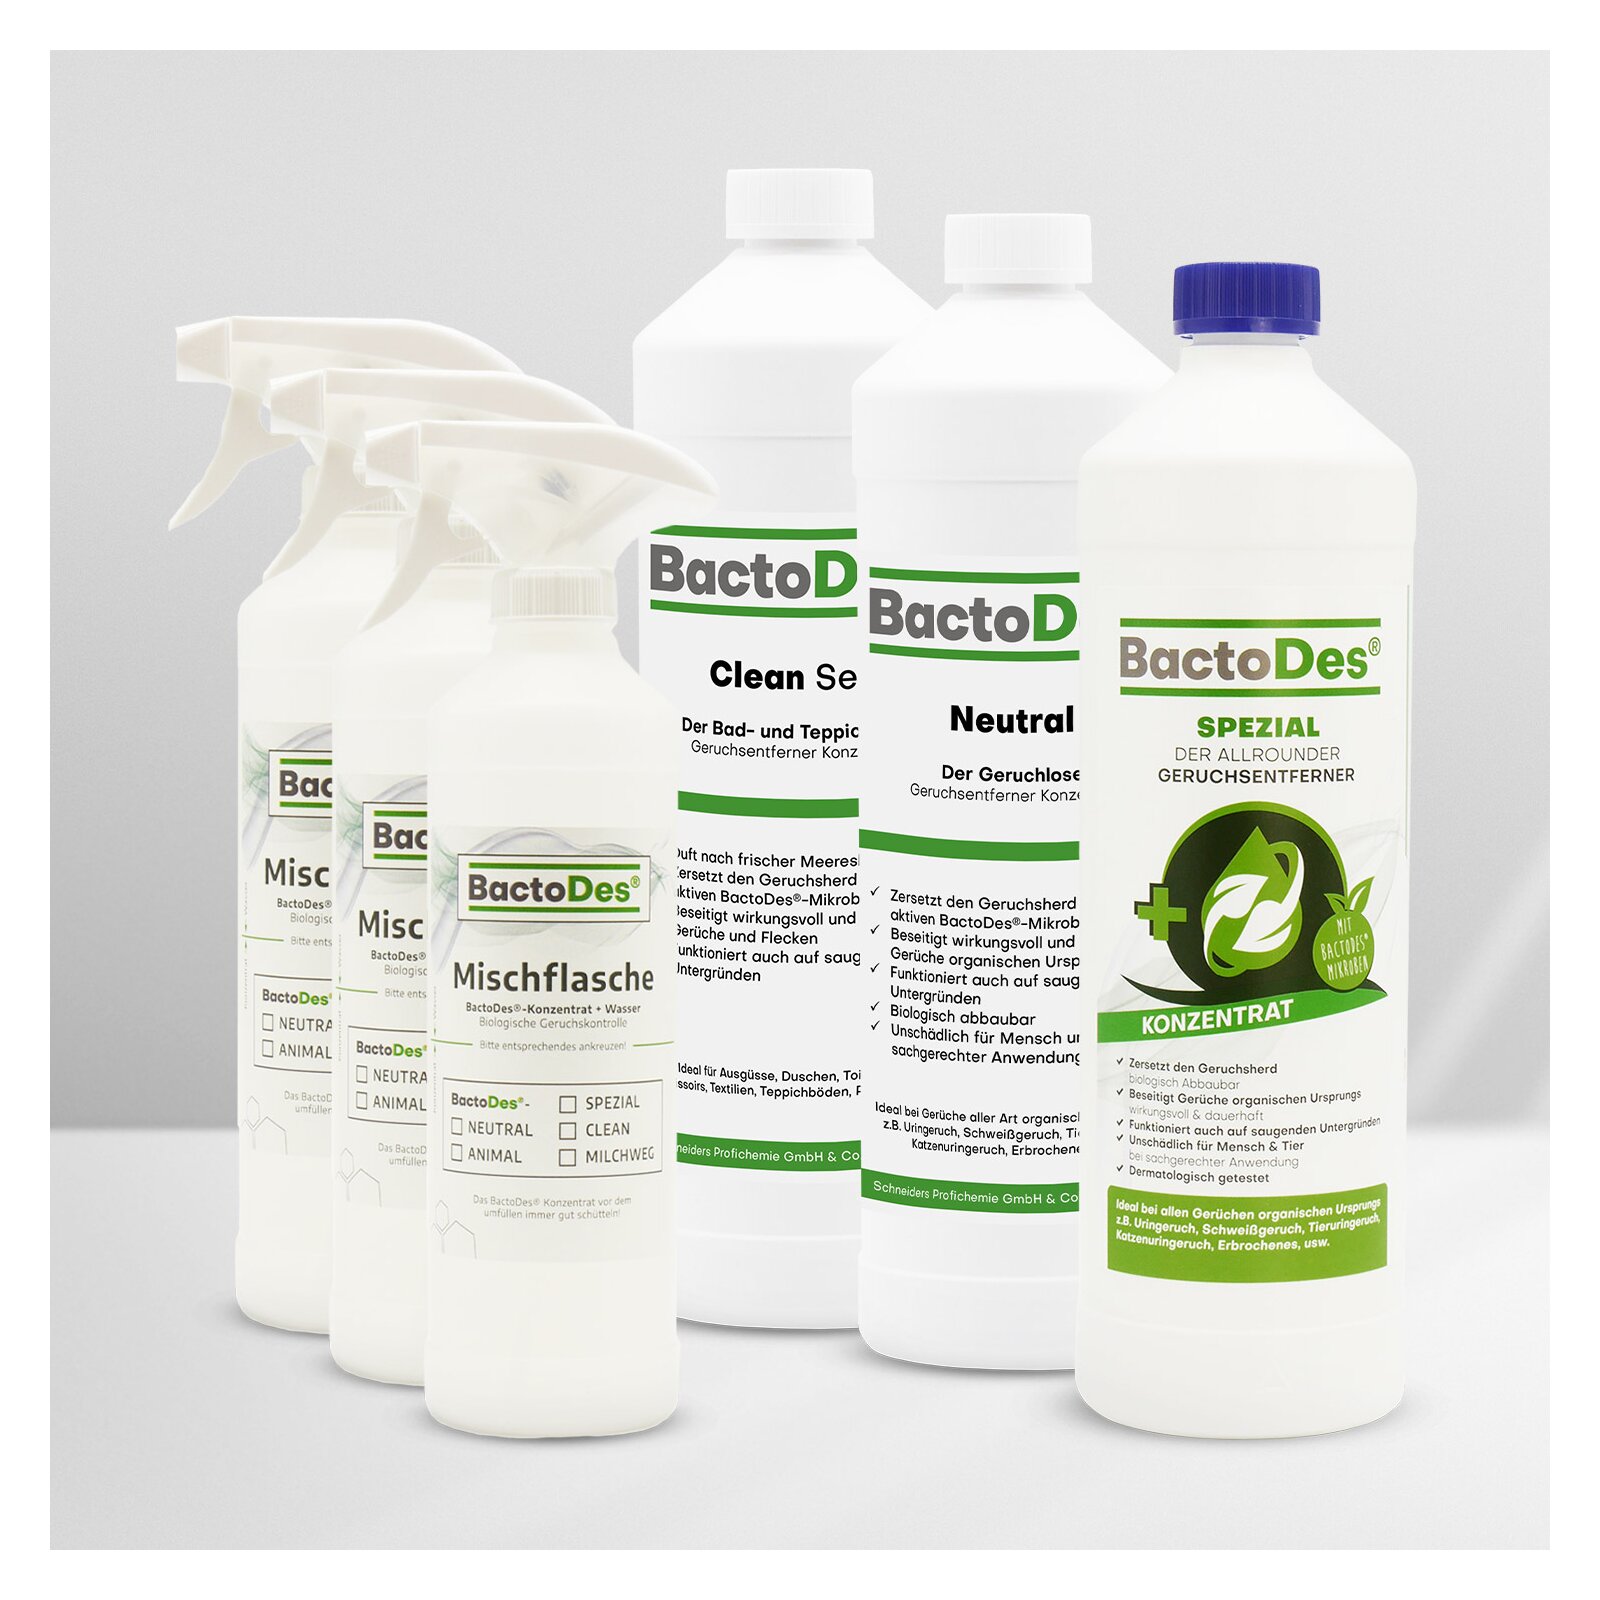 BactoDes-3-er-Set 'Clean-Spezial-Neutral' incl. 3 Misch- und Sprühflaschen von BactoDes